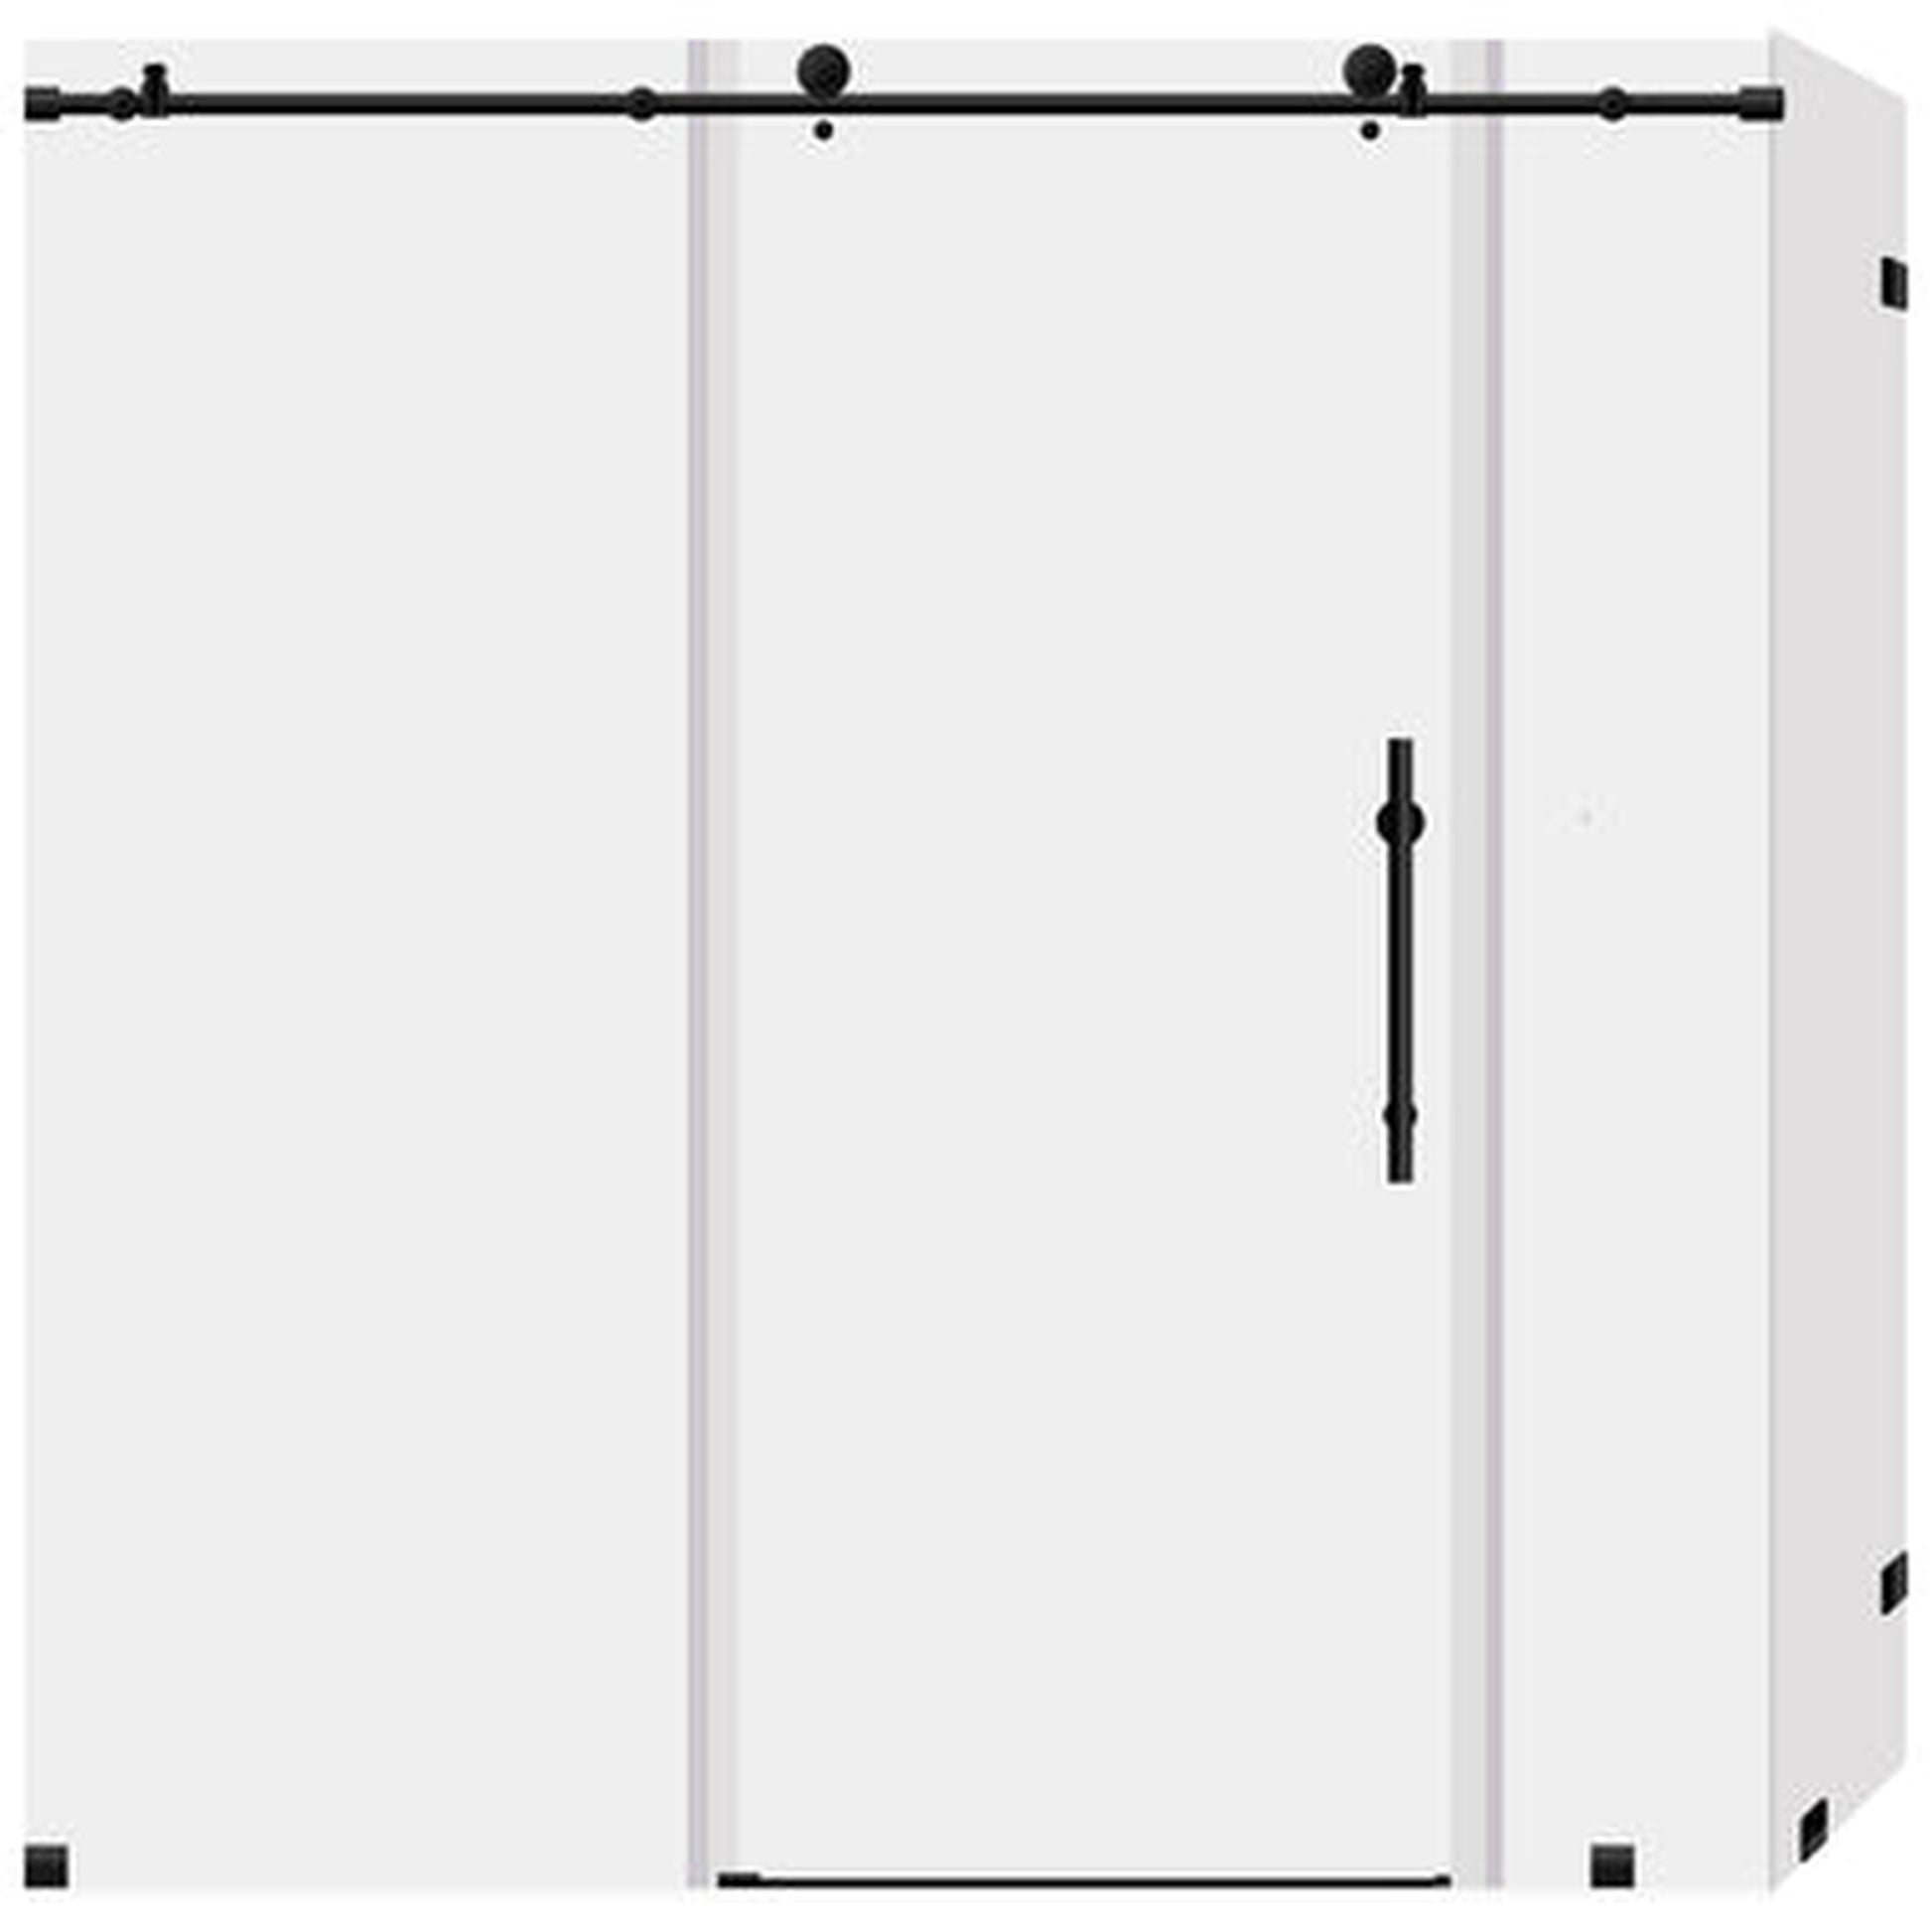 LessCare Ultra-C 68-72" x 76" x 34 1/2" Matte Black Sliding Shower Enclosure